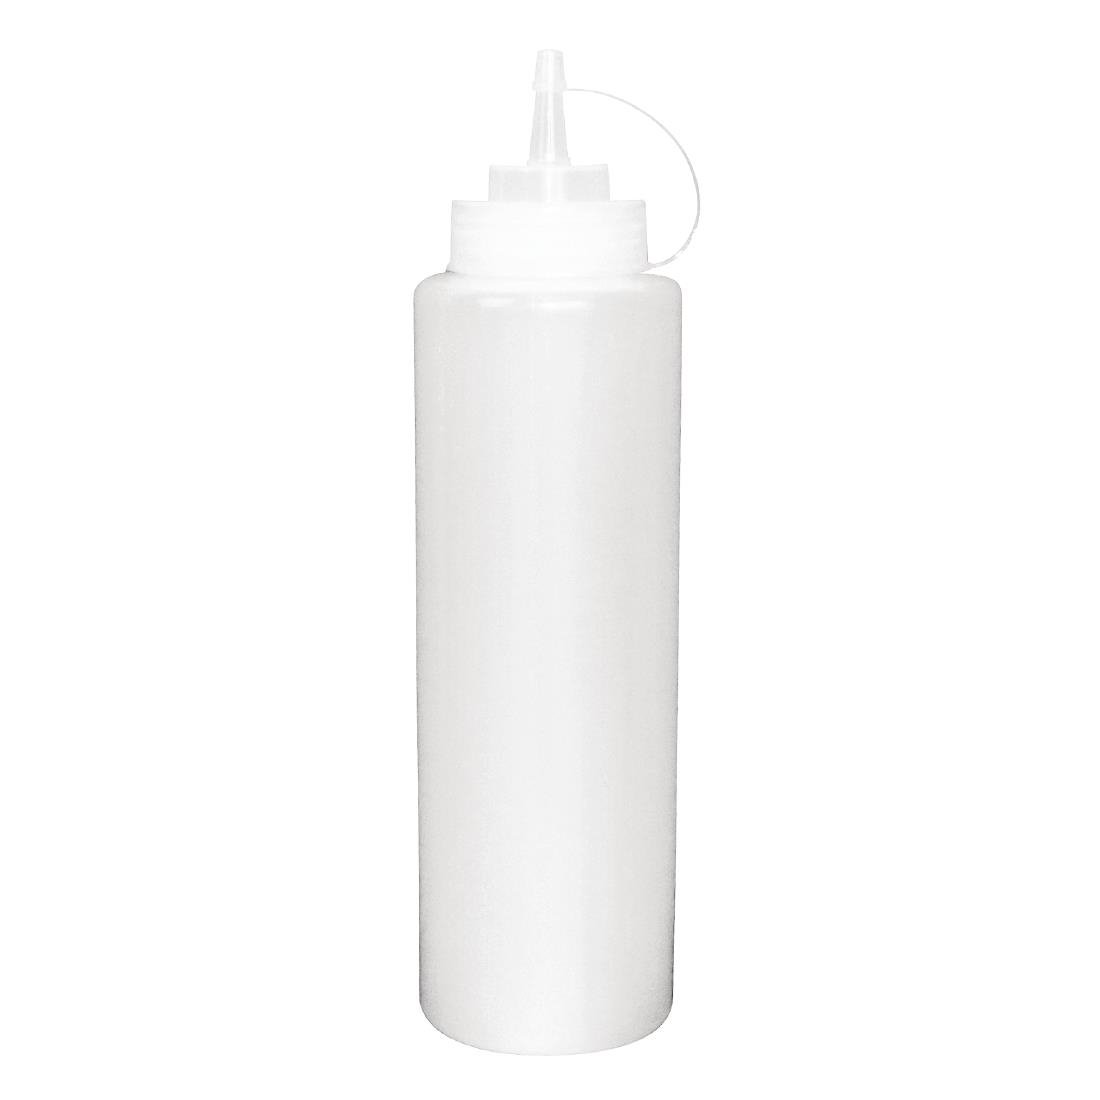 Distributeur de sauce transparent - vogue - 200(h) x 58(ø) mm / 340ml_0